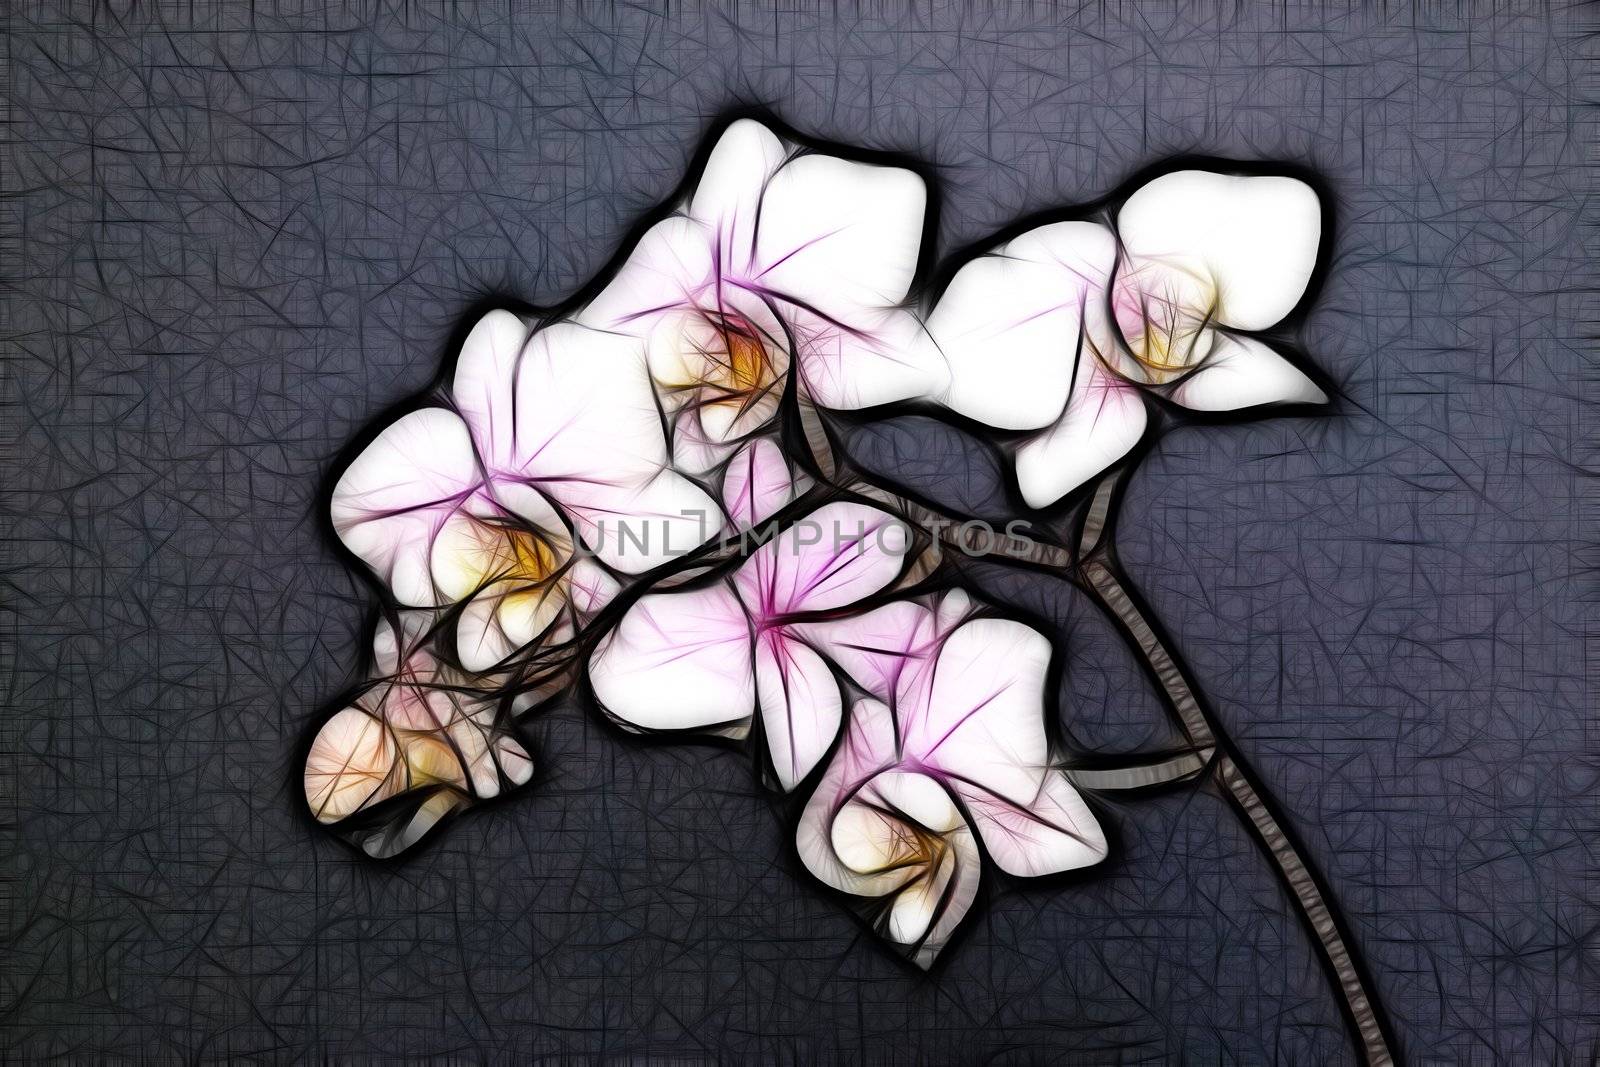 Minature Orchid by zambezi